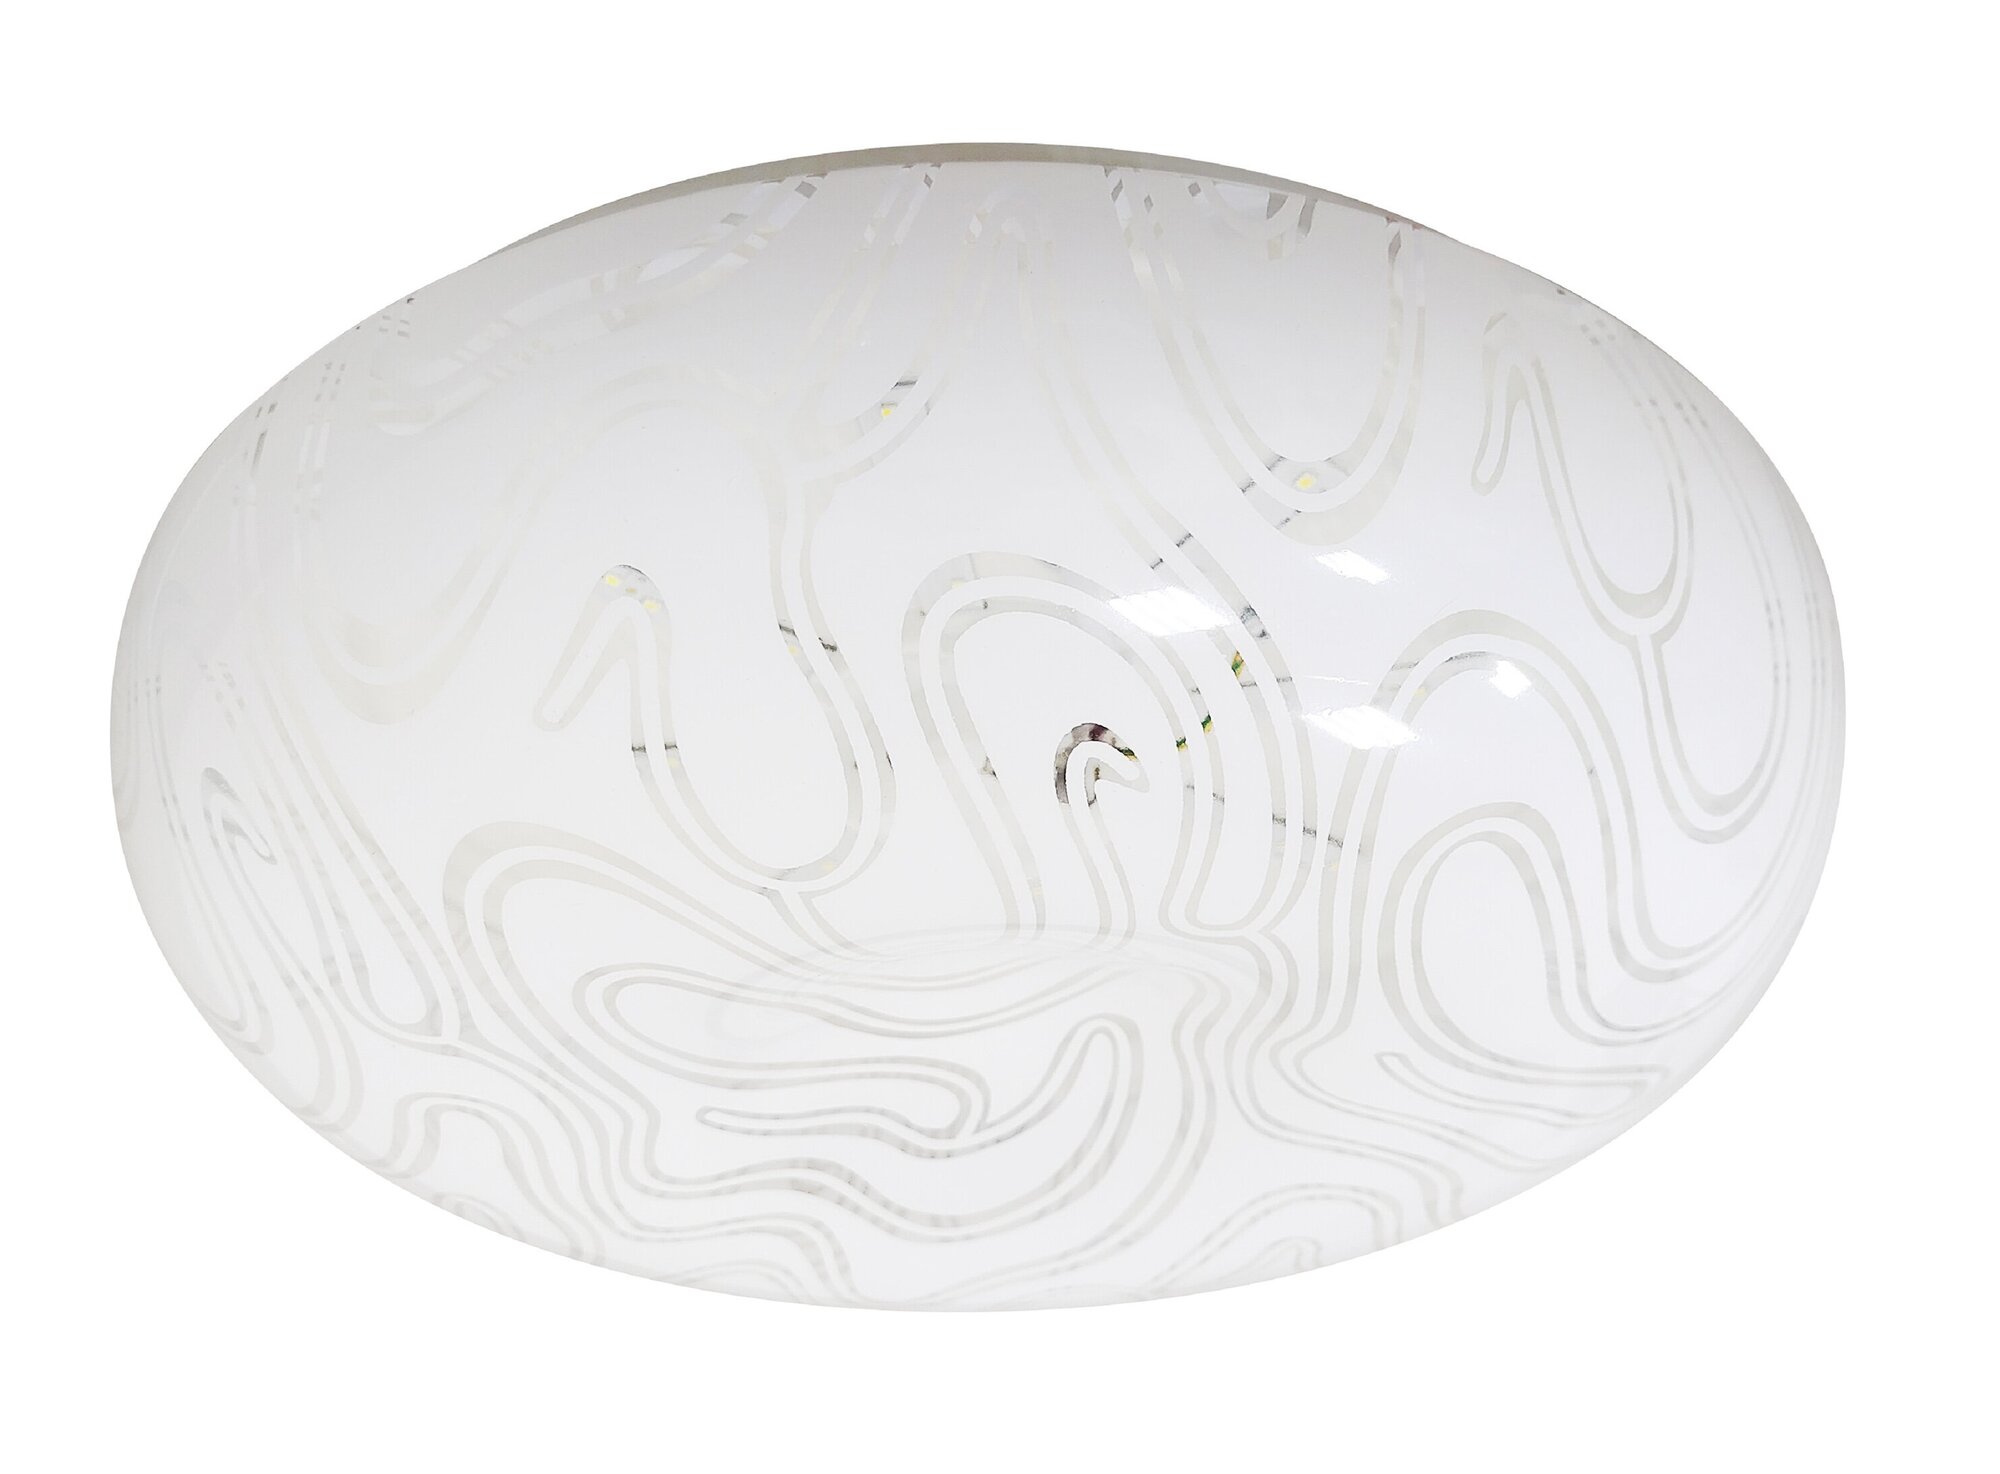 Потолочный светодиодный светильник ЭРА Классик без ДУ SPB-6 - 12 Onyx Б0051077